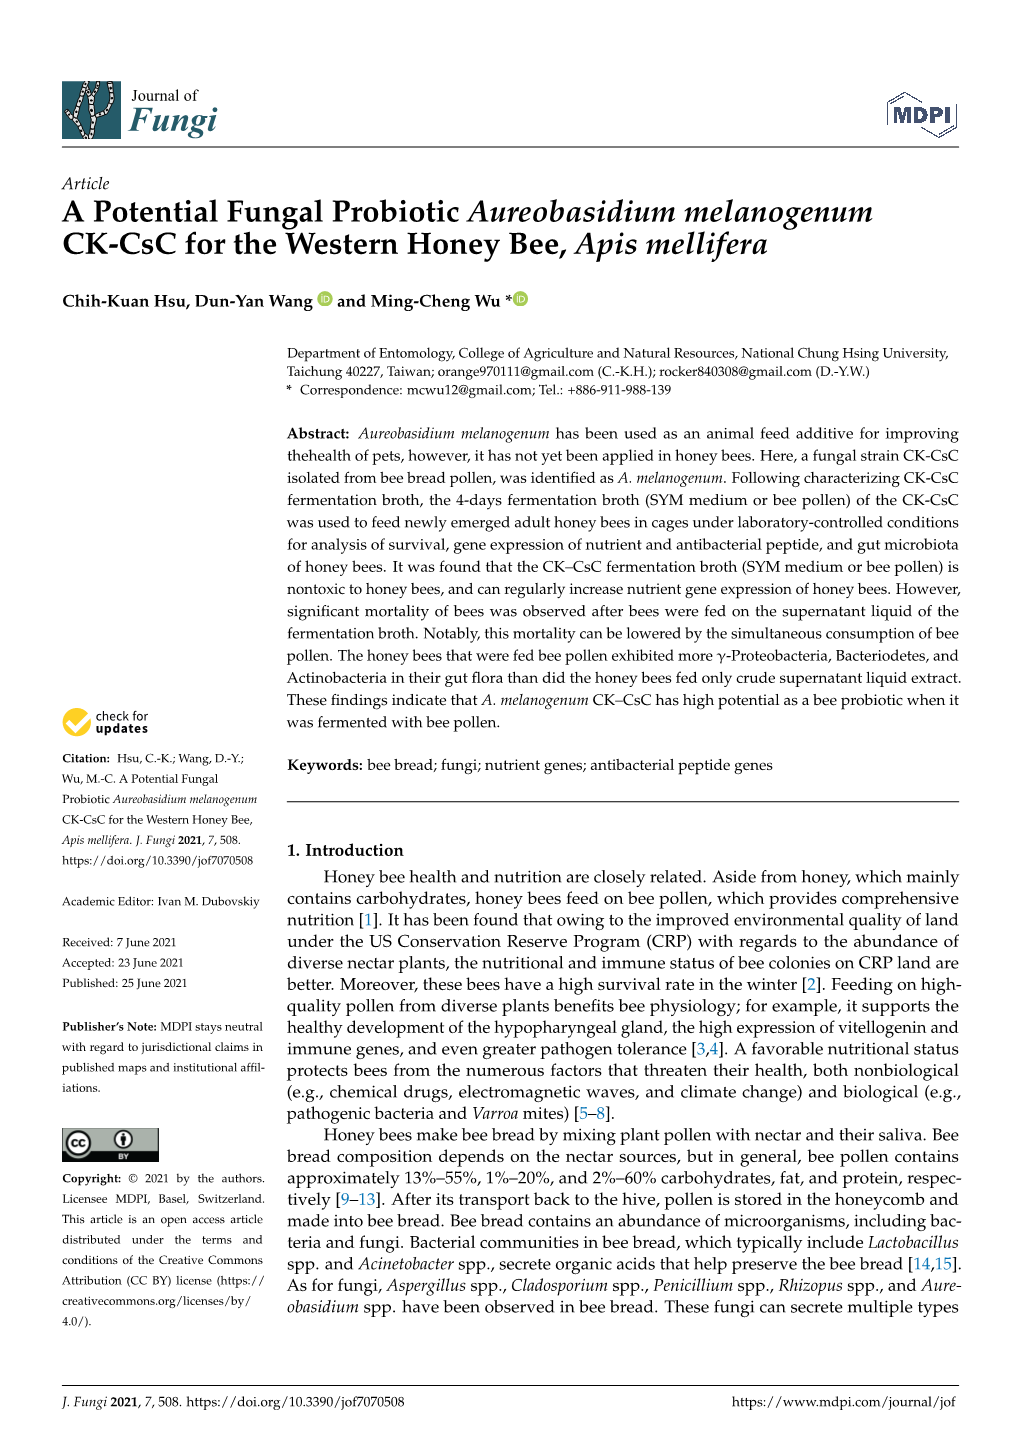 A Potential Fungal Probiotic Aureobasidium Melanogenum CK-Csc for the Western Honey Bee, Apis Mellifera